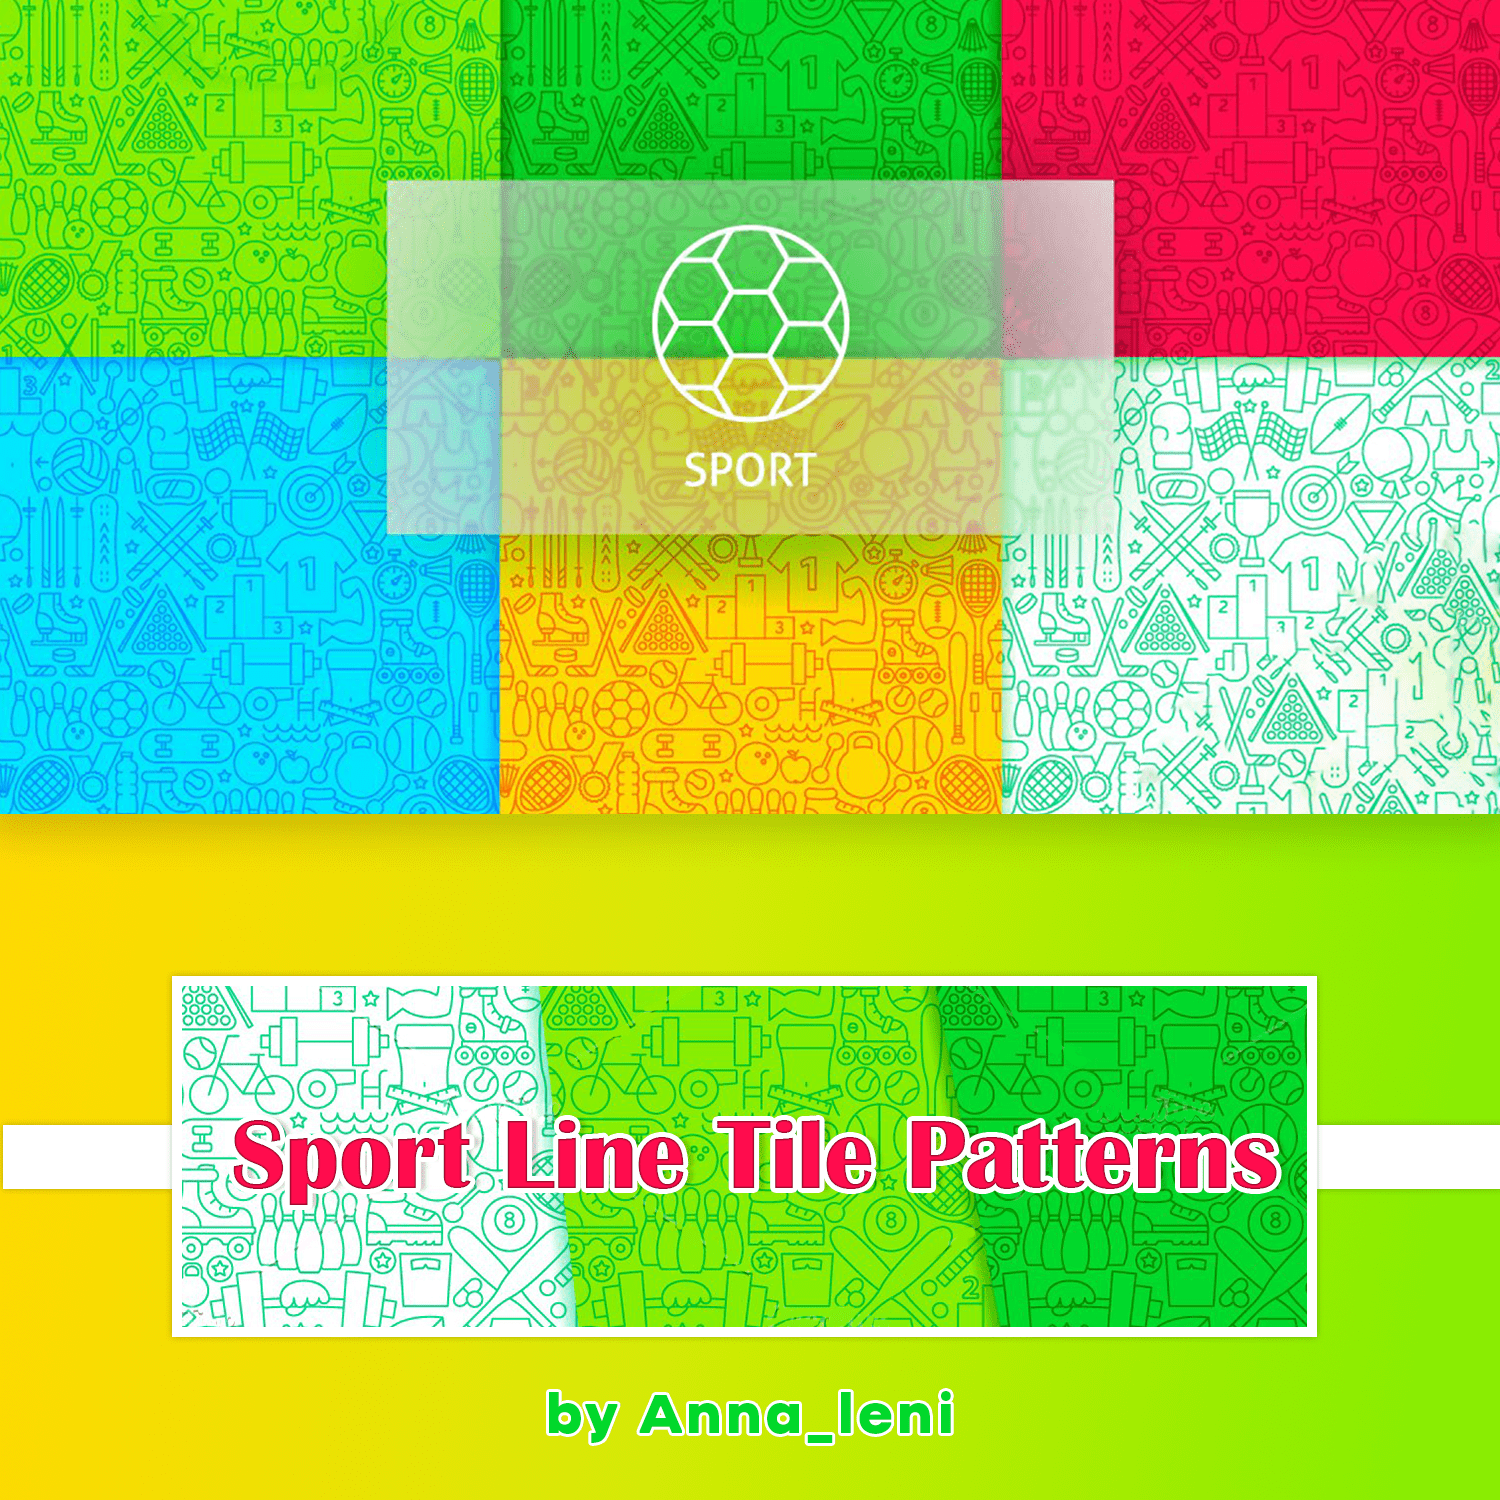 Sport Line Tile Patterns cover.